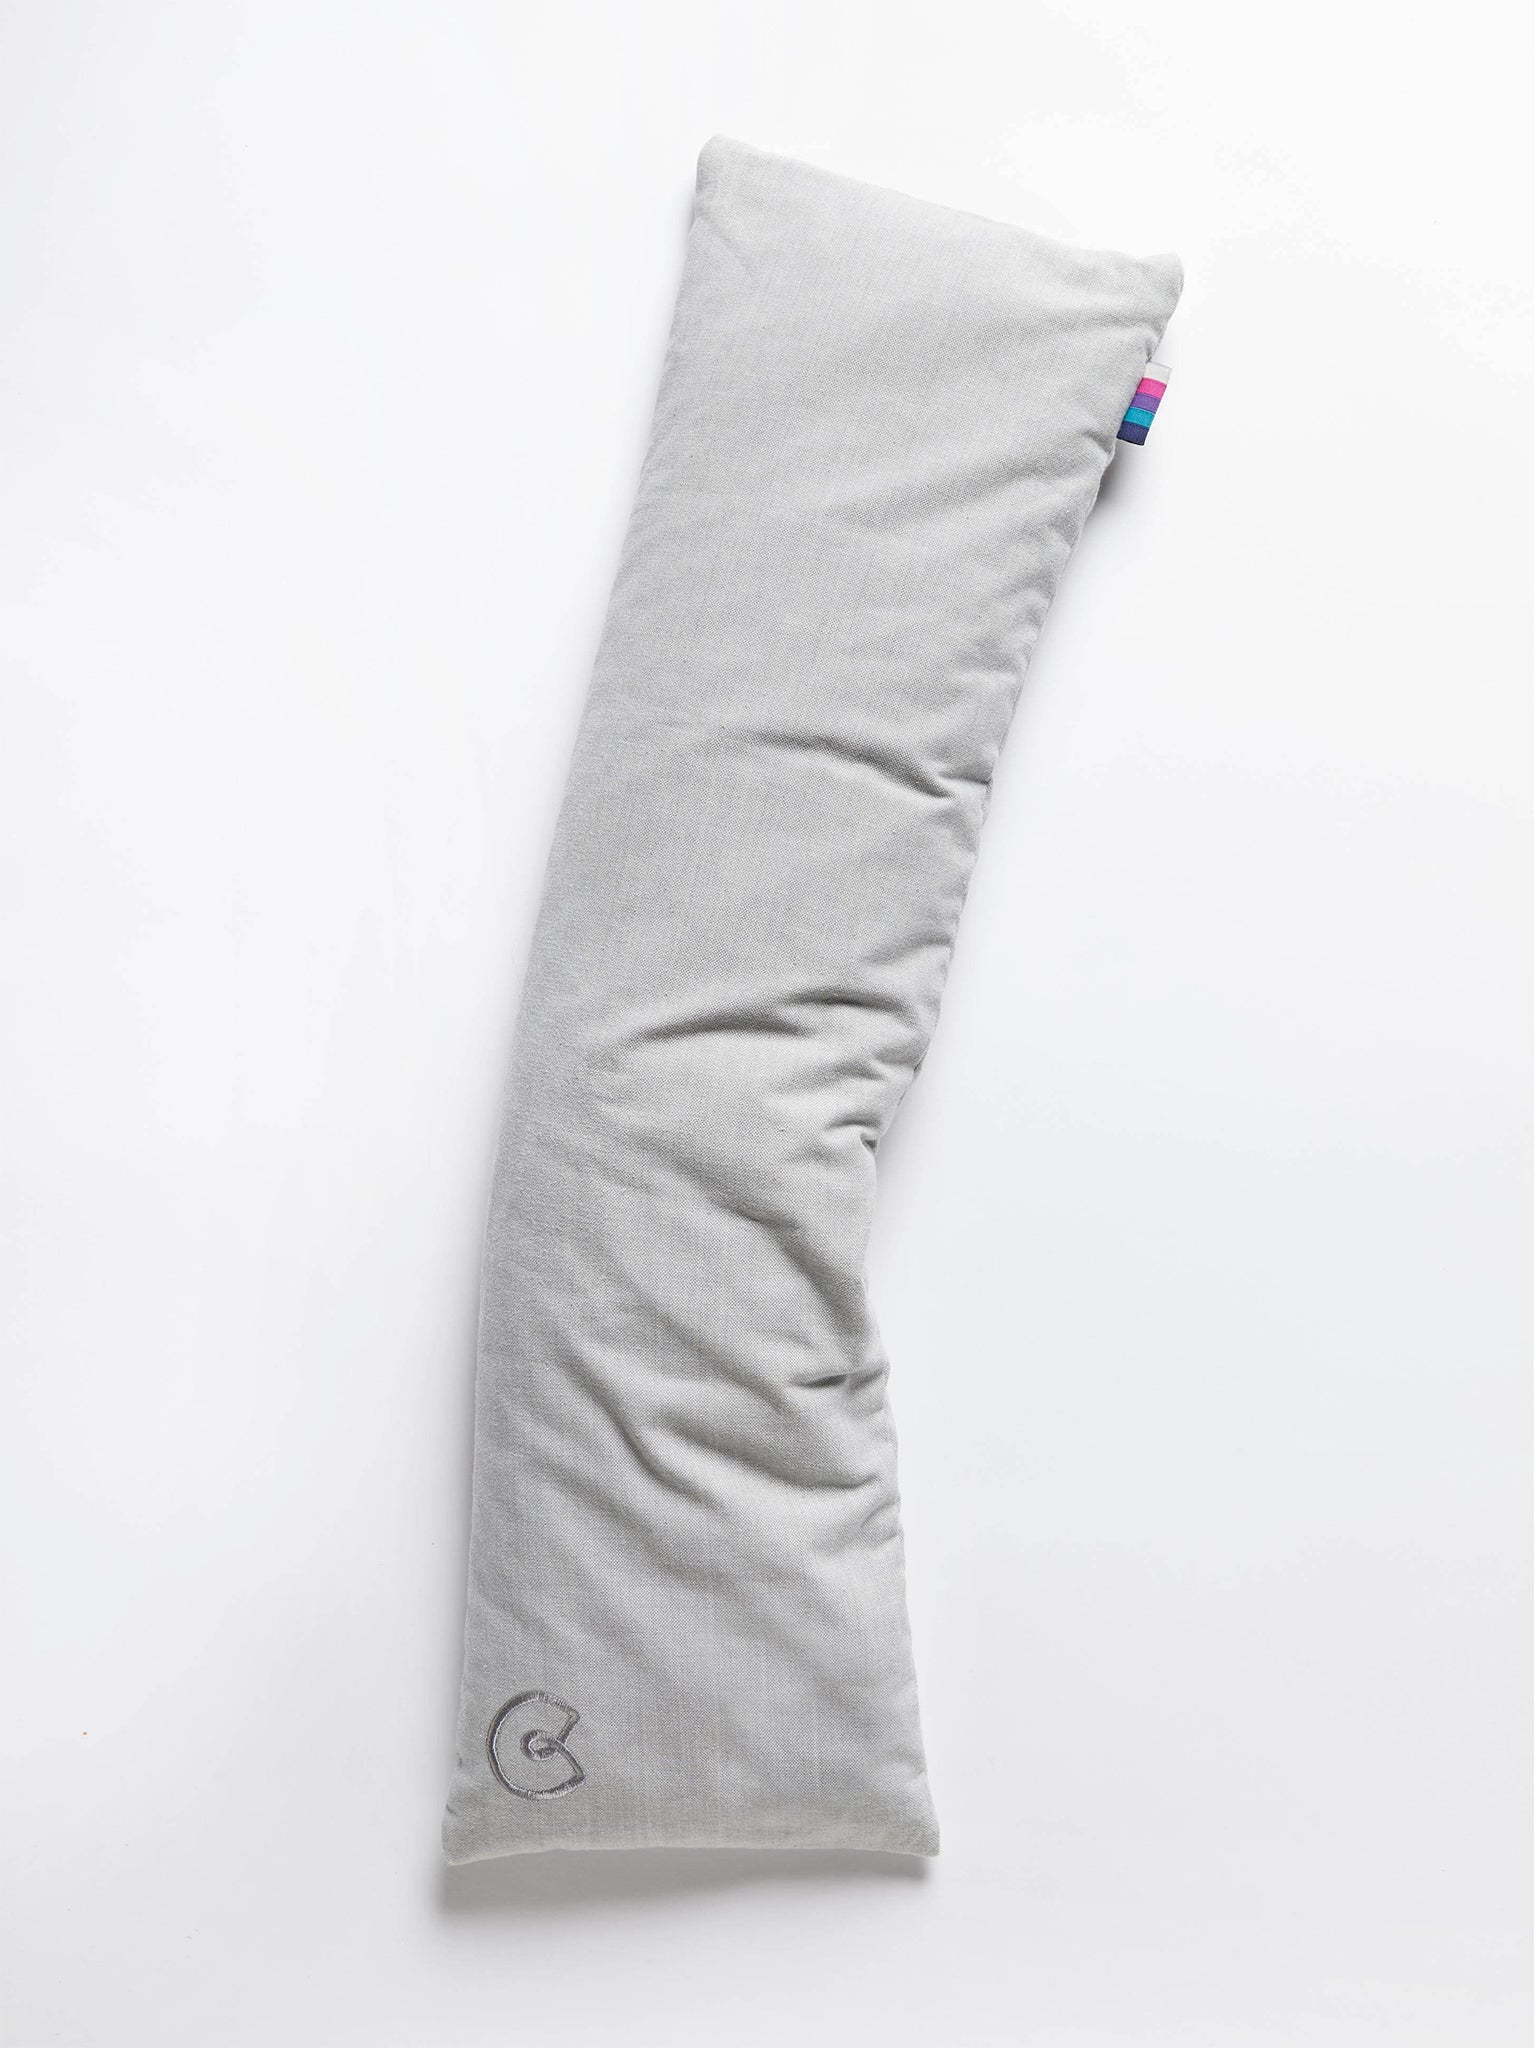 Yogamatters Organic Cotton Pranayama Yoga Pillow